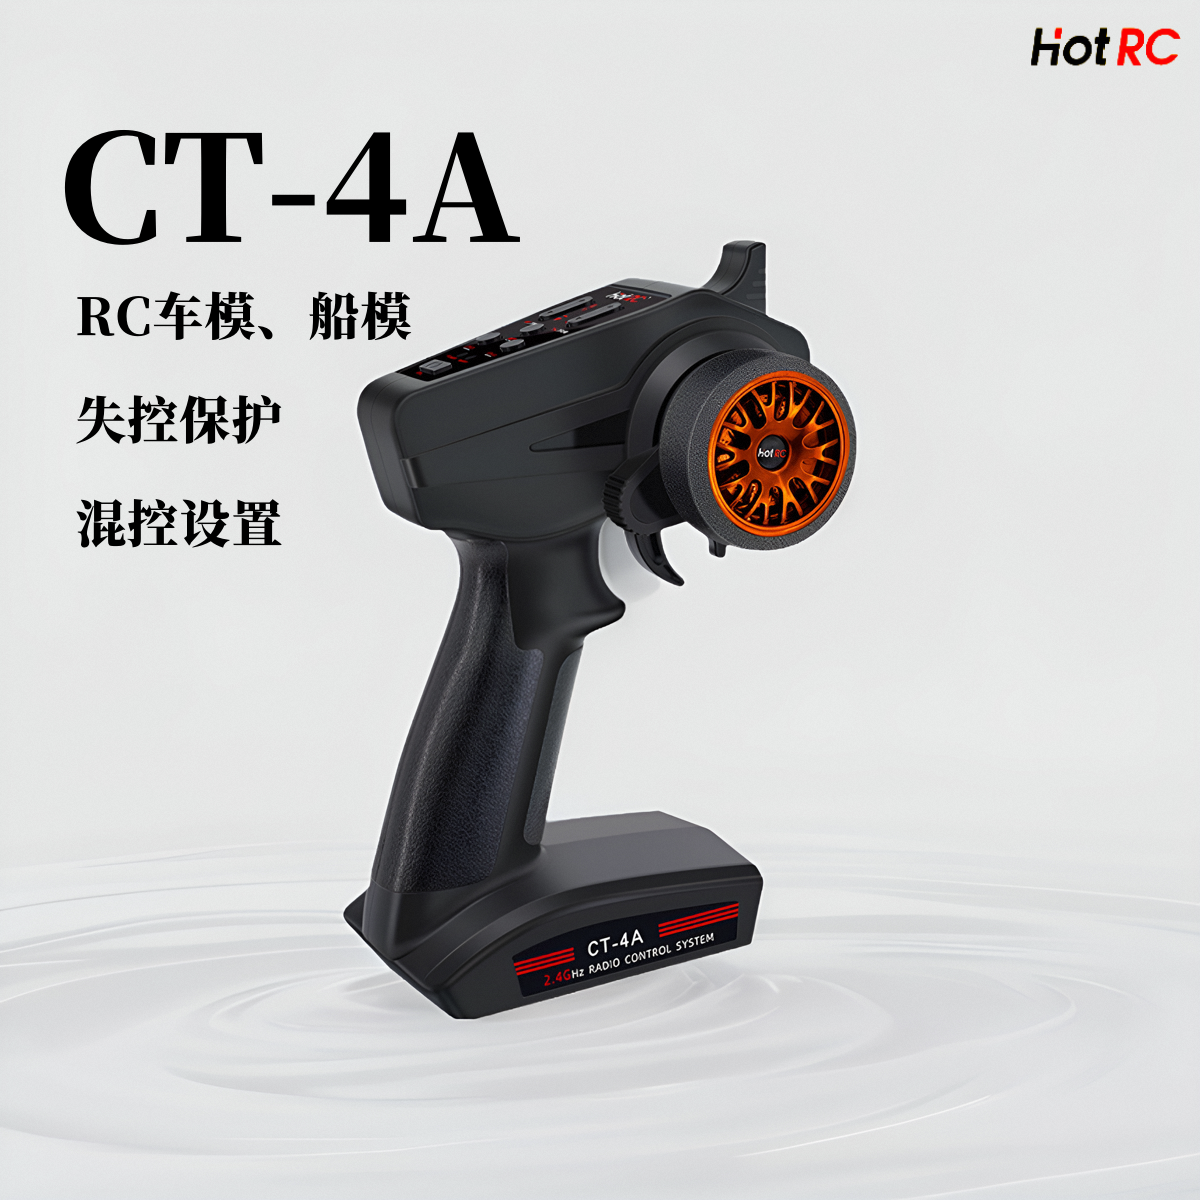 HOTCT-4A2.4GHz船模遥控器